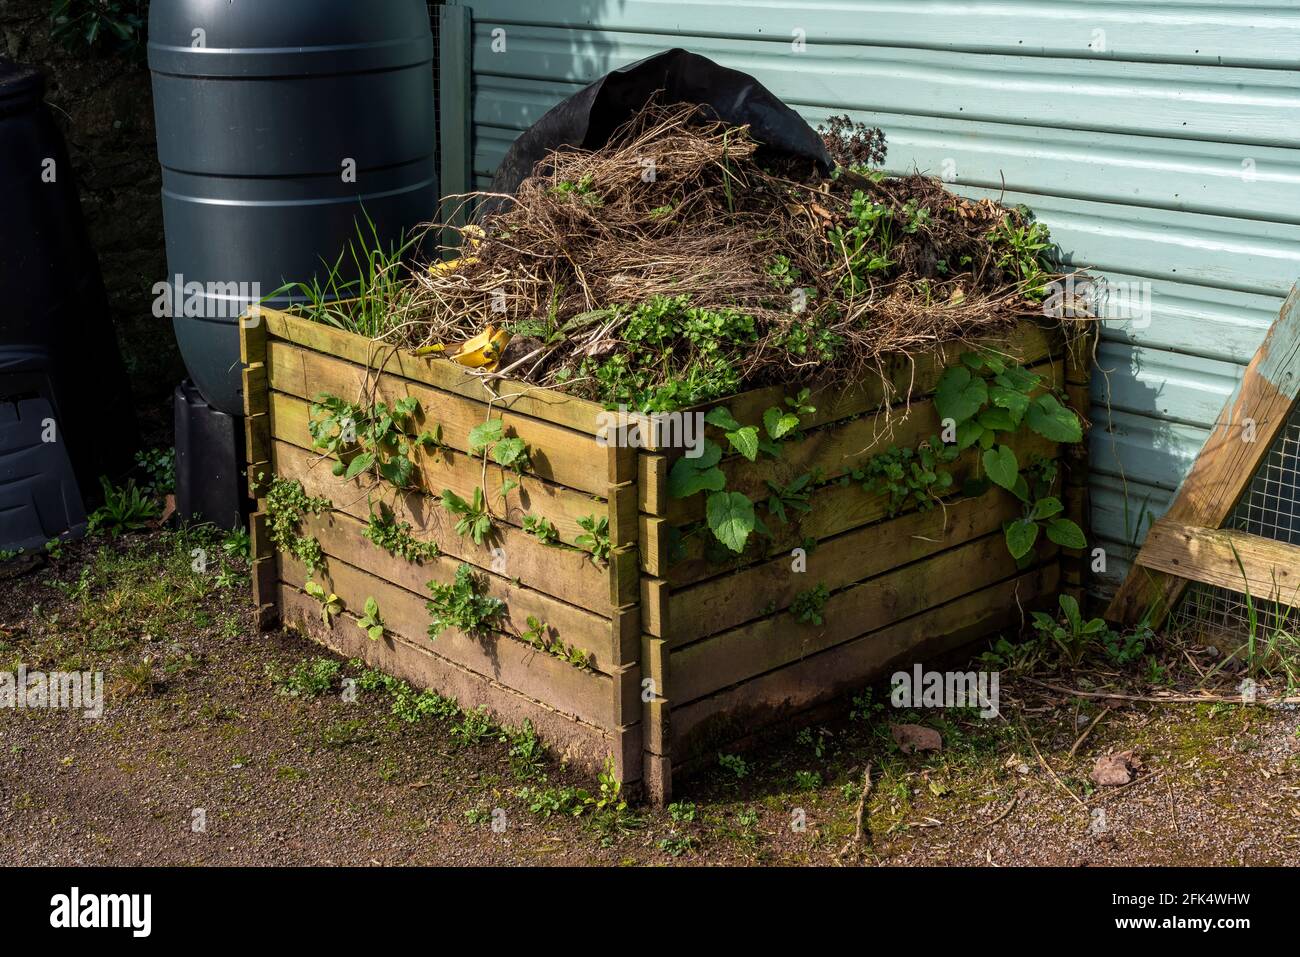 Holzkompostbehälter voll verrottet Vegetation Garten Abfälle zu Im Frühjahr als Kompost und Mulch für recycelt werden Das Gemüsebeet nach dem Zulassen Stockfoto